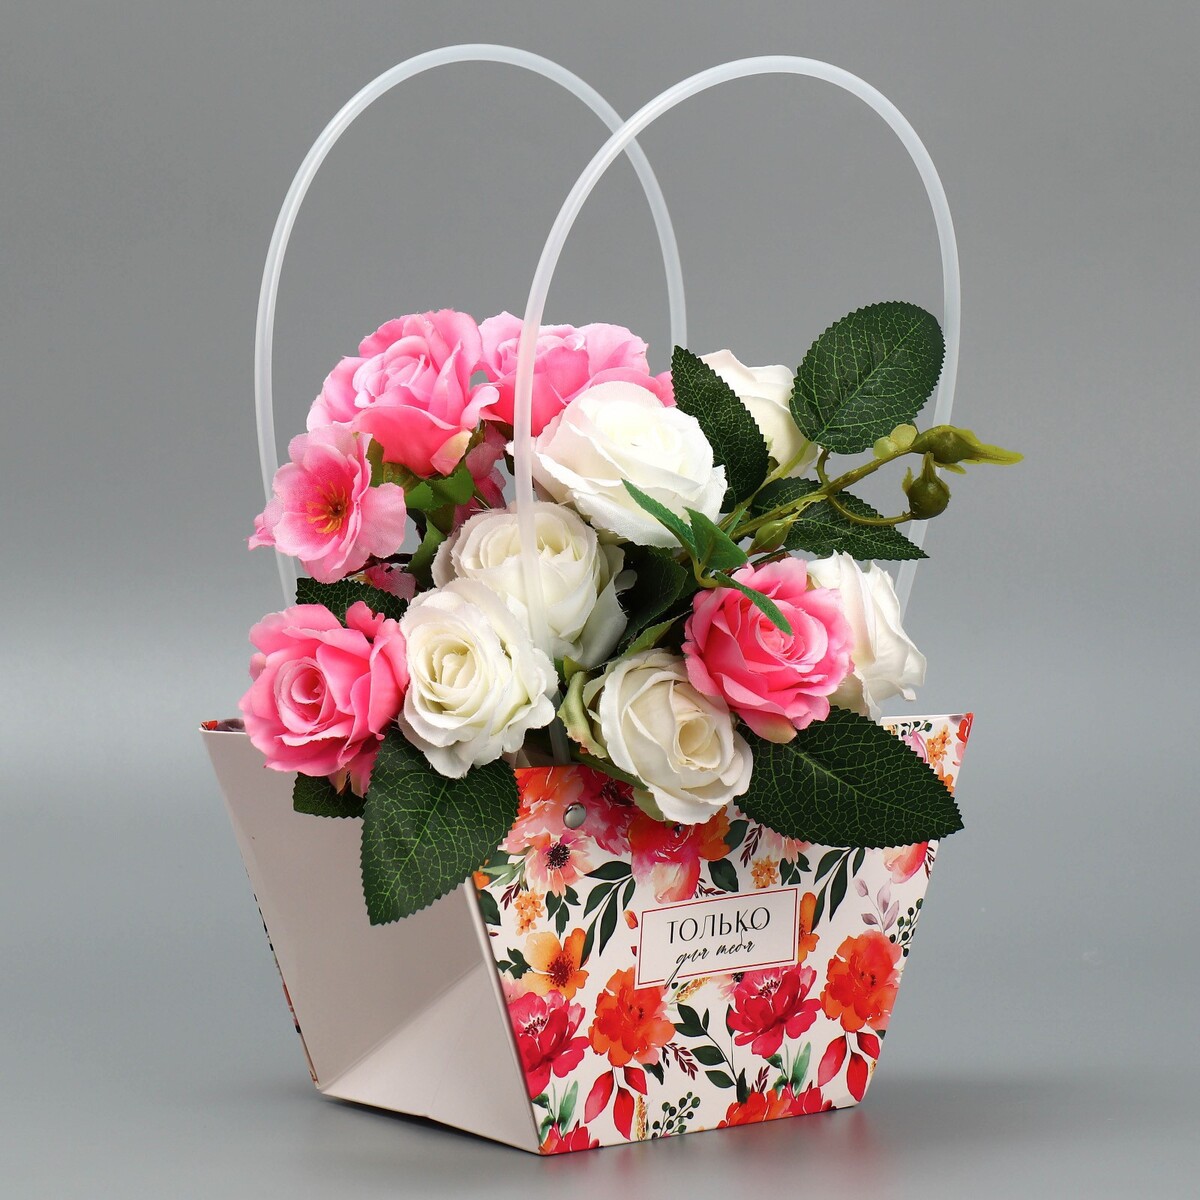 Пакет для цветов only you, 20 х 12 х 20 см пакет для ов only you 20 х 12 х 20 см